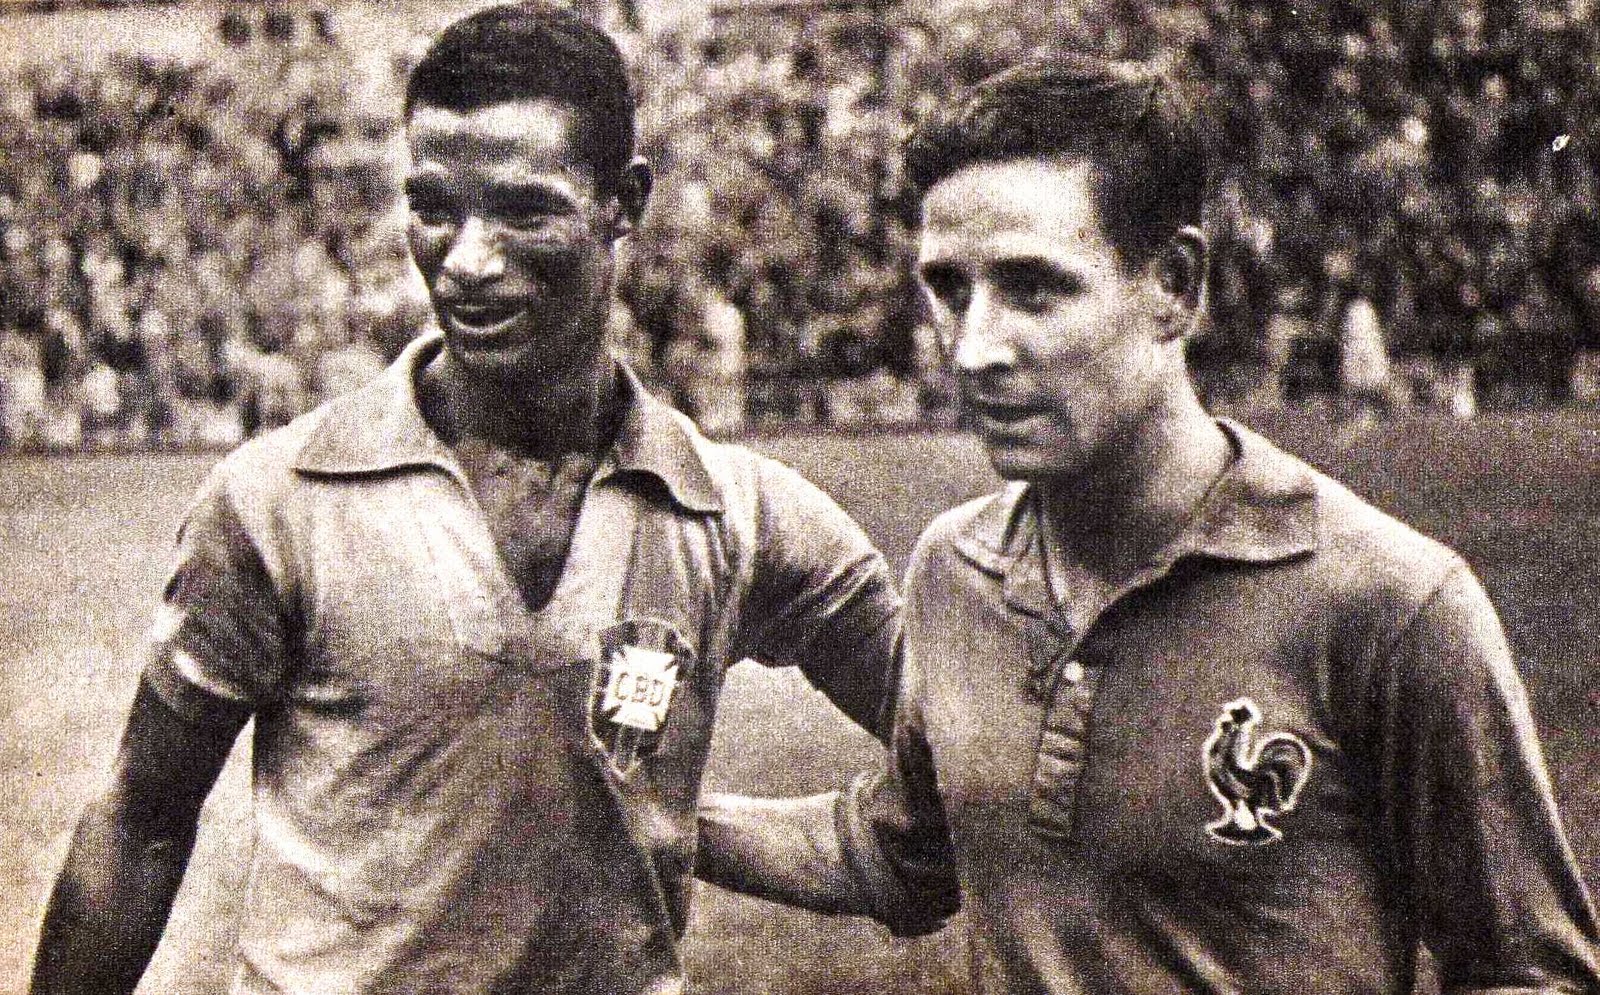 Der Erfinder des toten Blattes, der Brasilianer Didi (l.), hier an der WM 1958 mit dem ebenfalls famosen Franzosen Raymond Kopa.